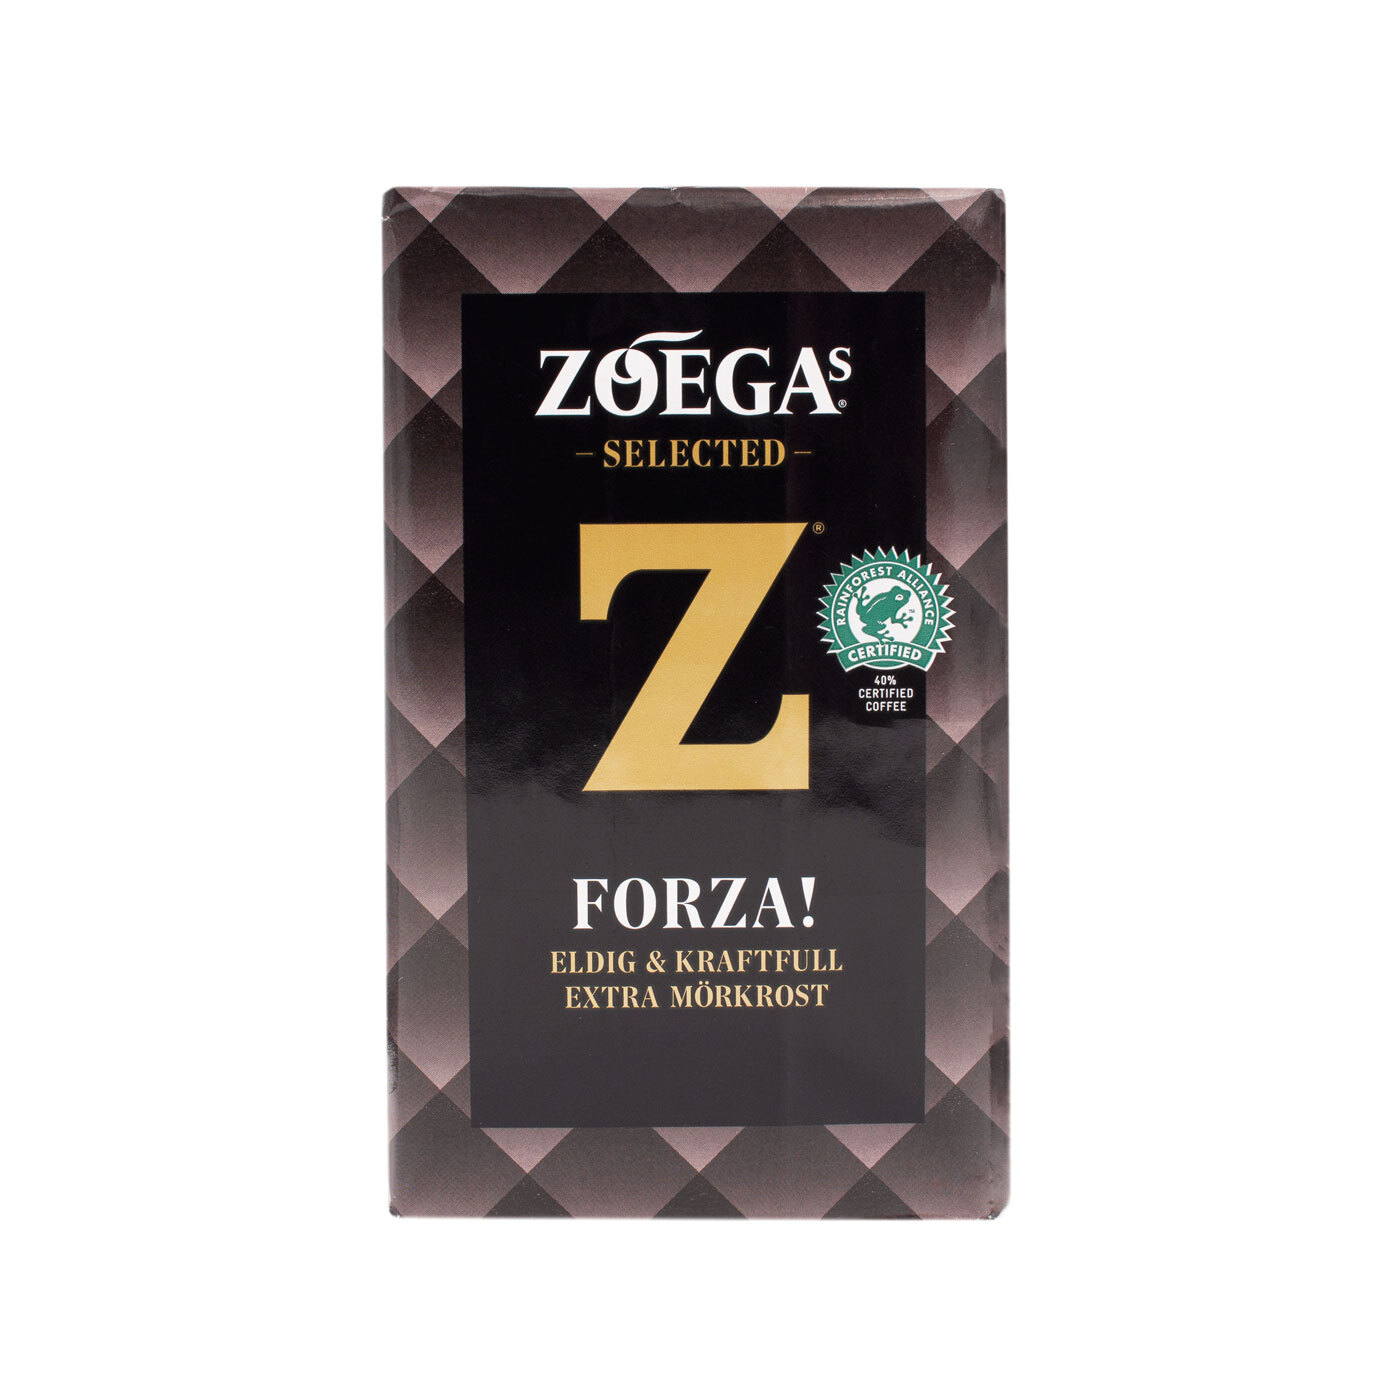 Forza フォルツァ 450g コーヒー 粉 エクストラ深煎り Zoegas Fikahuset フィーカフセット スウェーデンの紅茶とコーヒーの販売